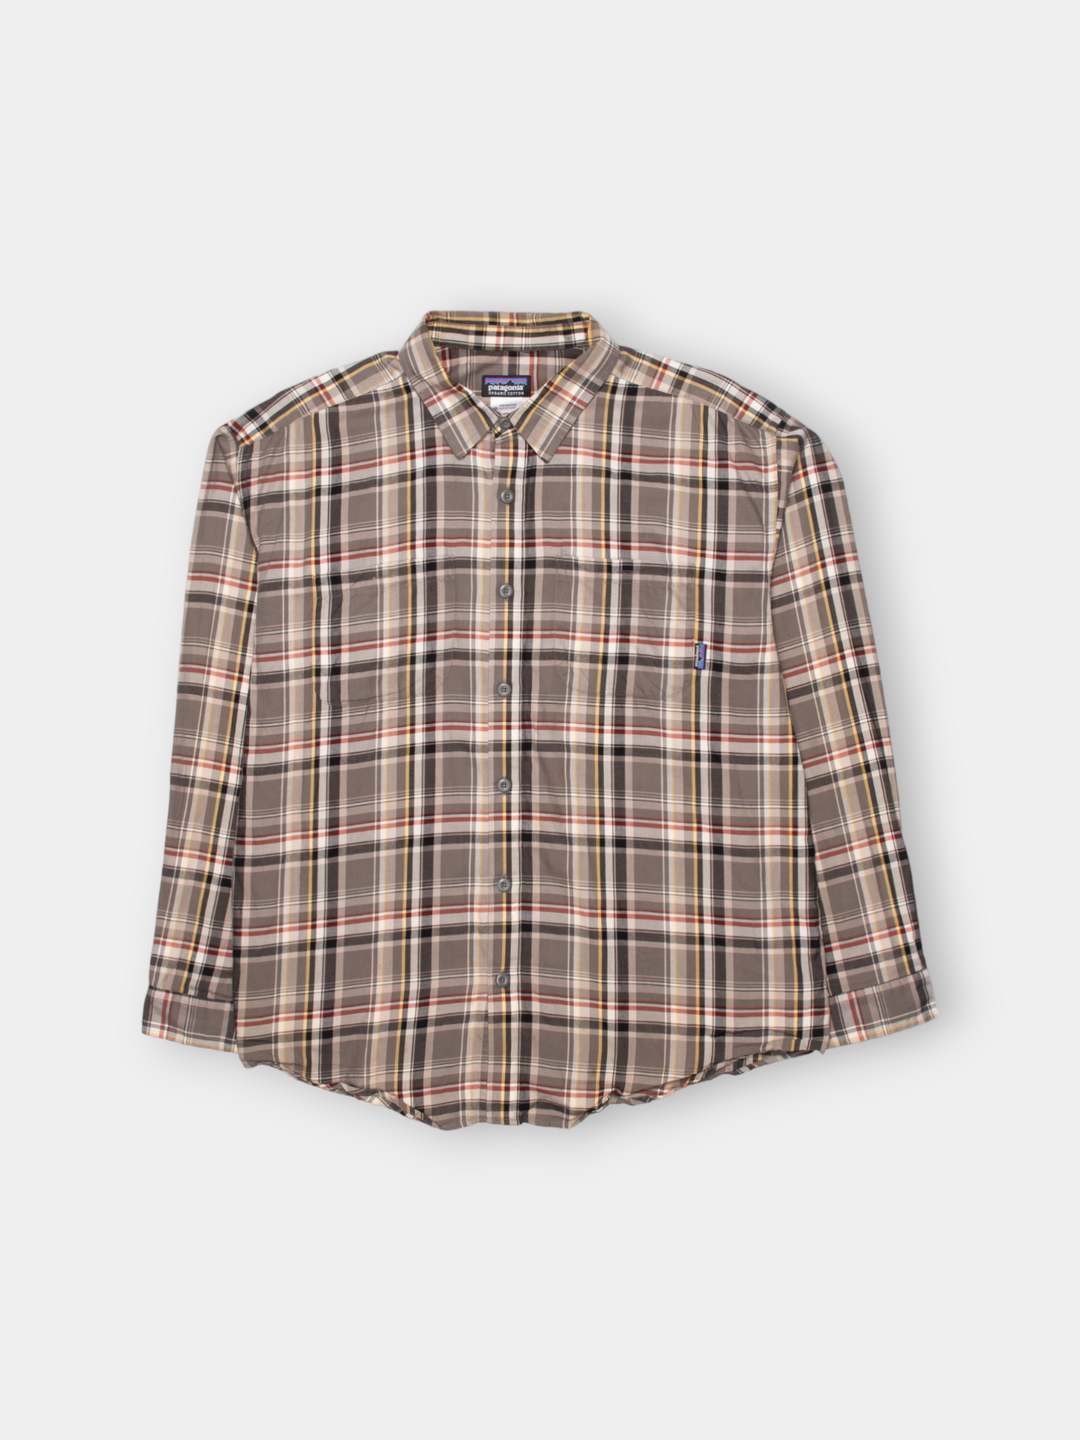 Vintage Patagonia Plaid Shirt (L)